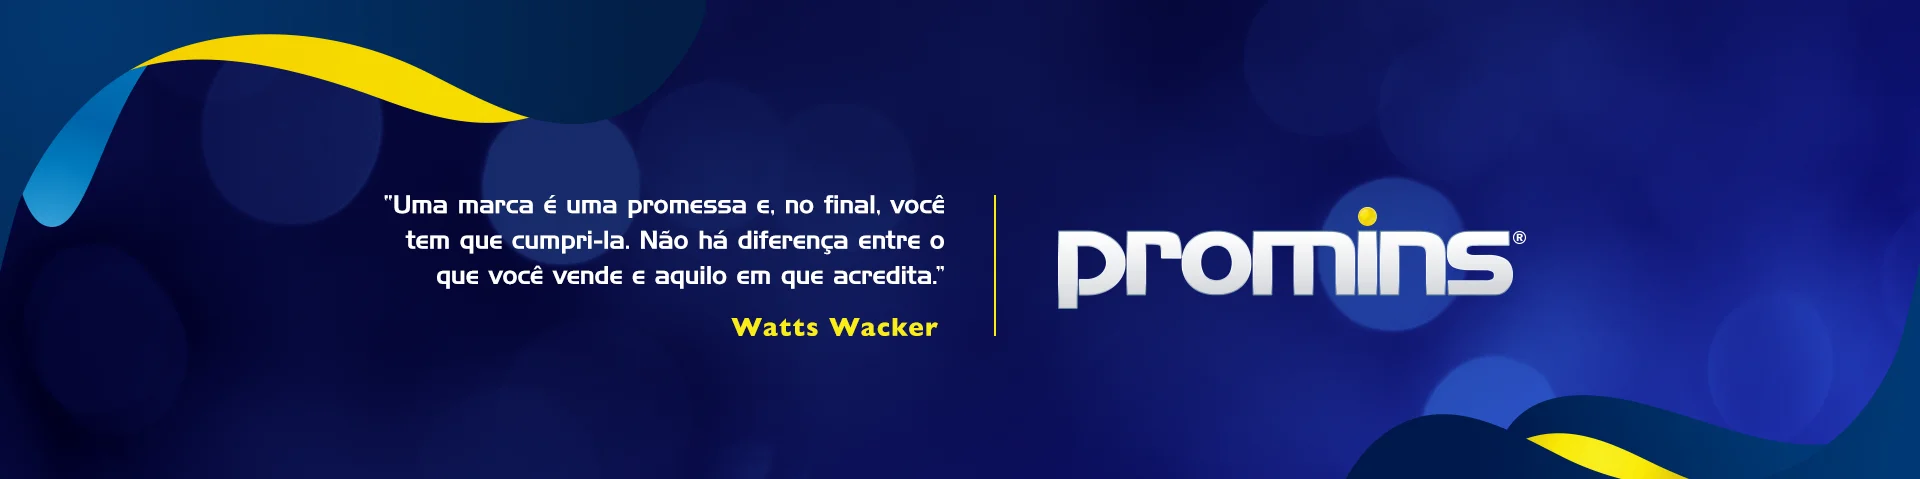 Watts Wacker